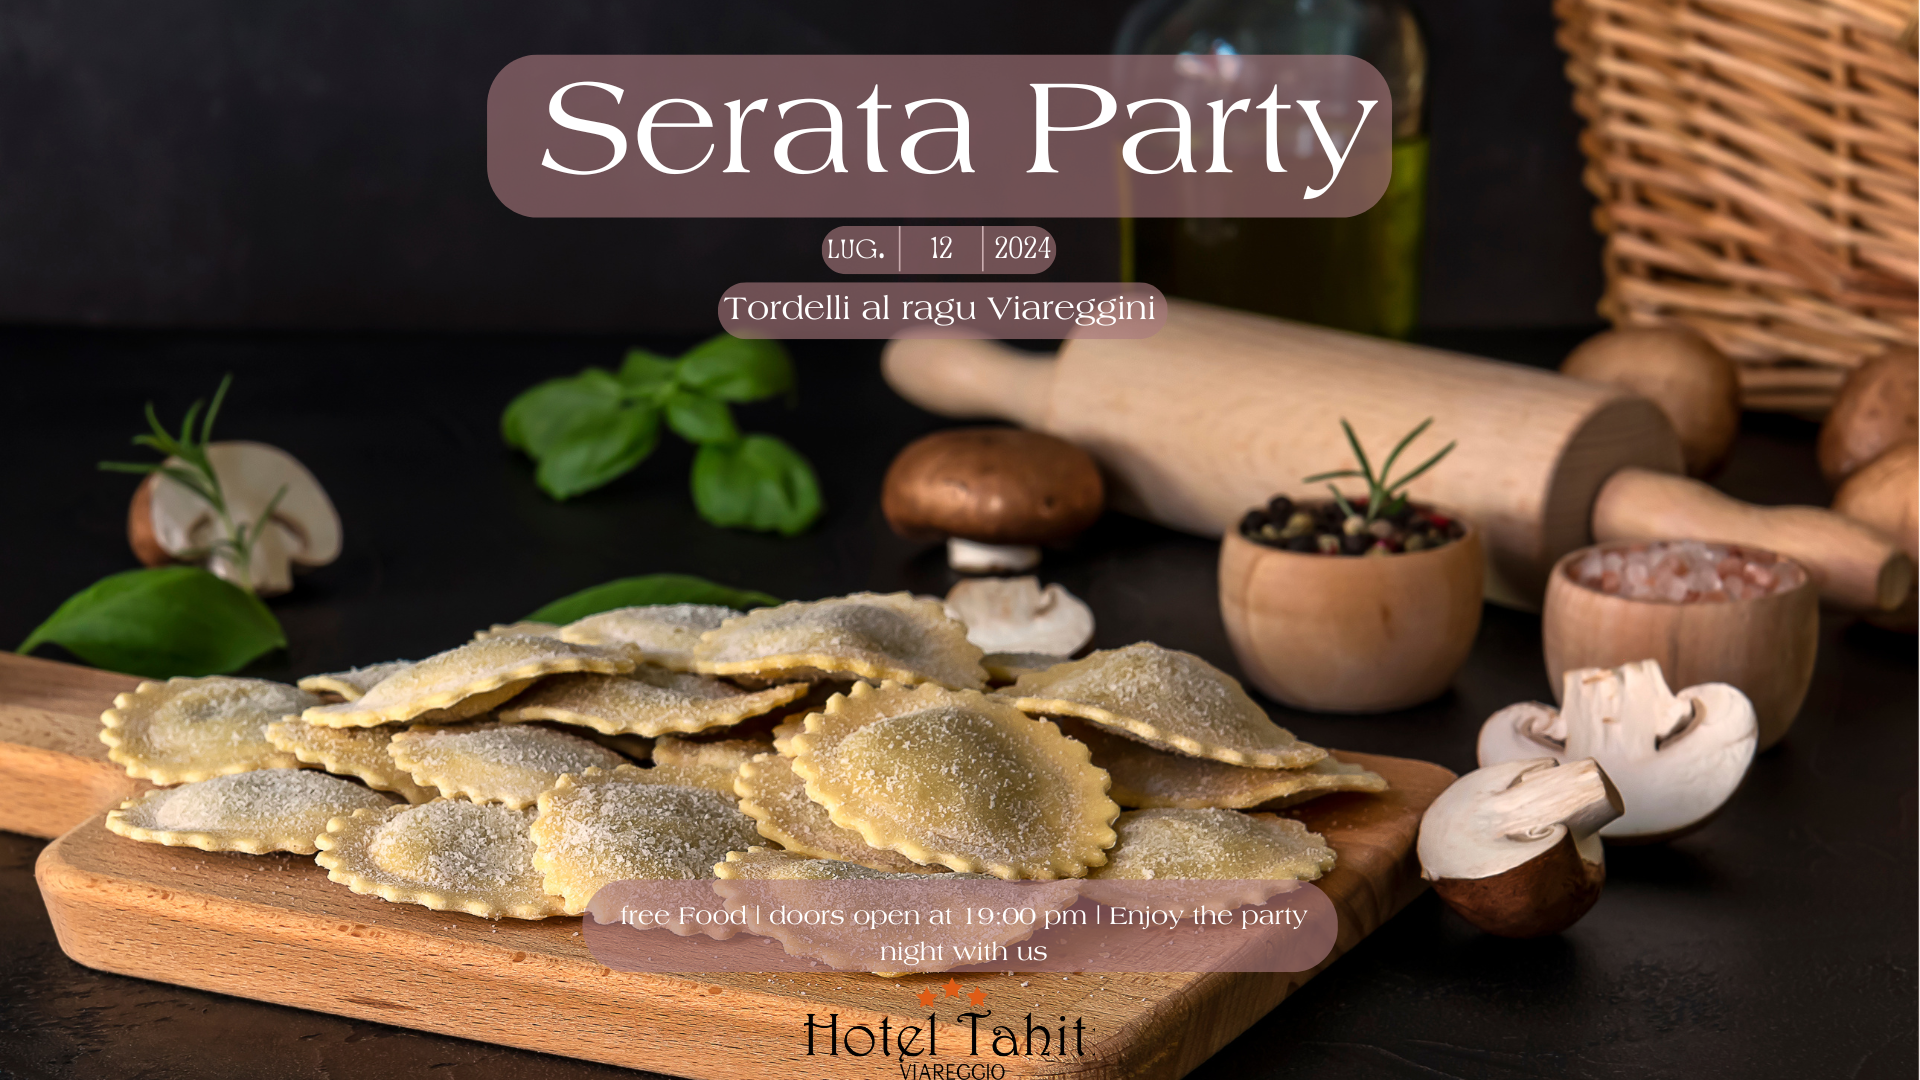 hoteltahiti it serata-party-con-tordelli-toscani 004